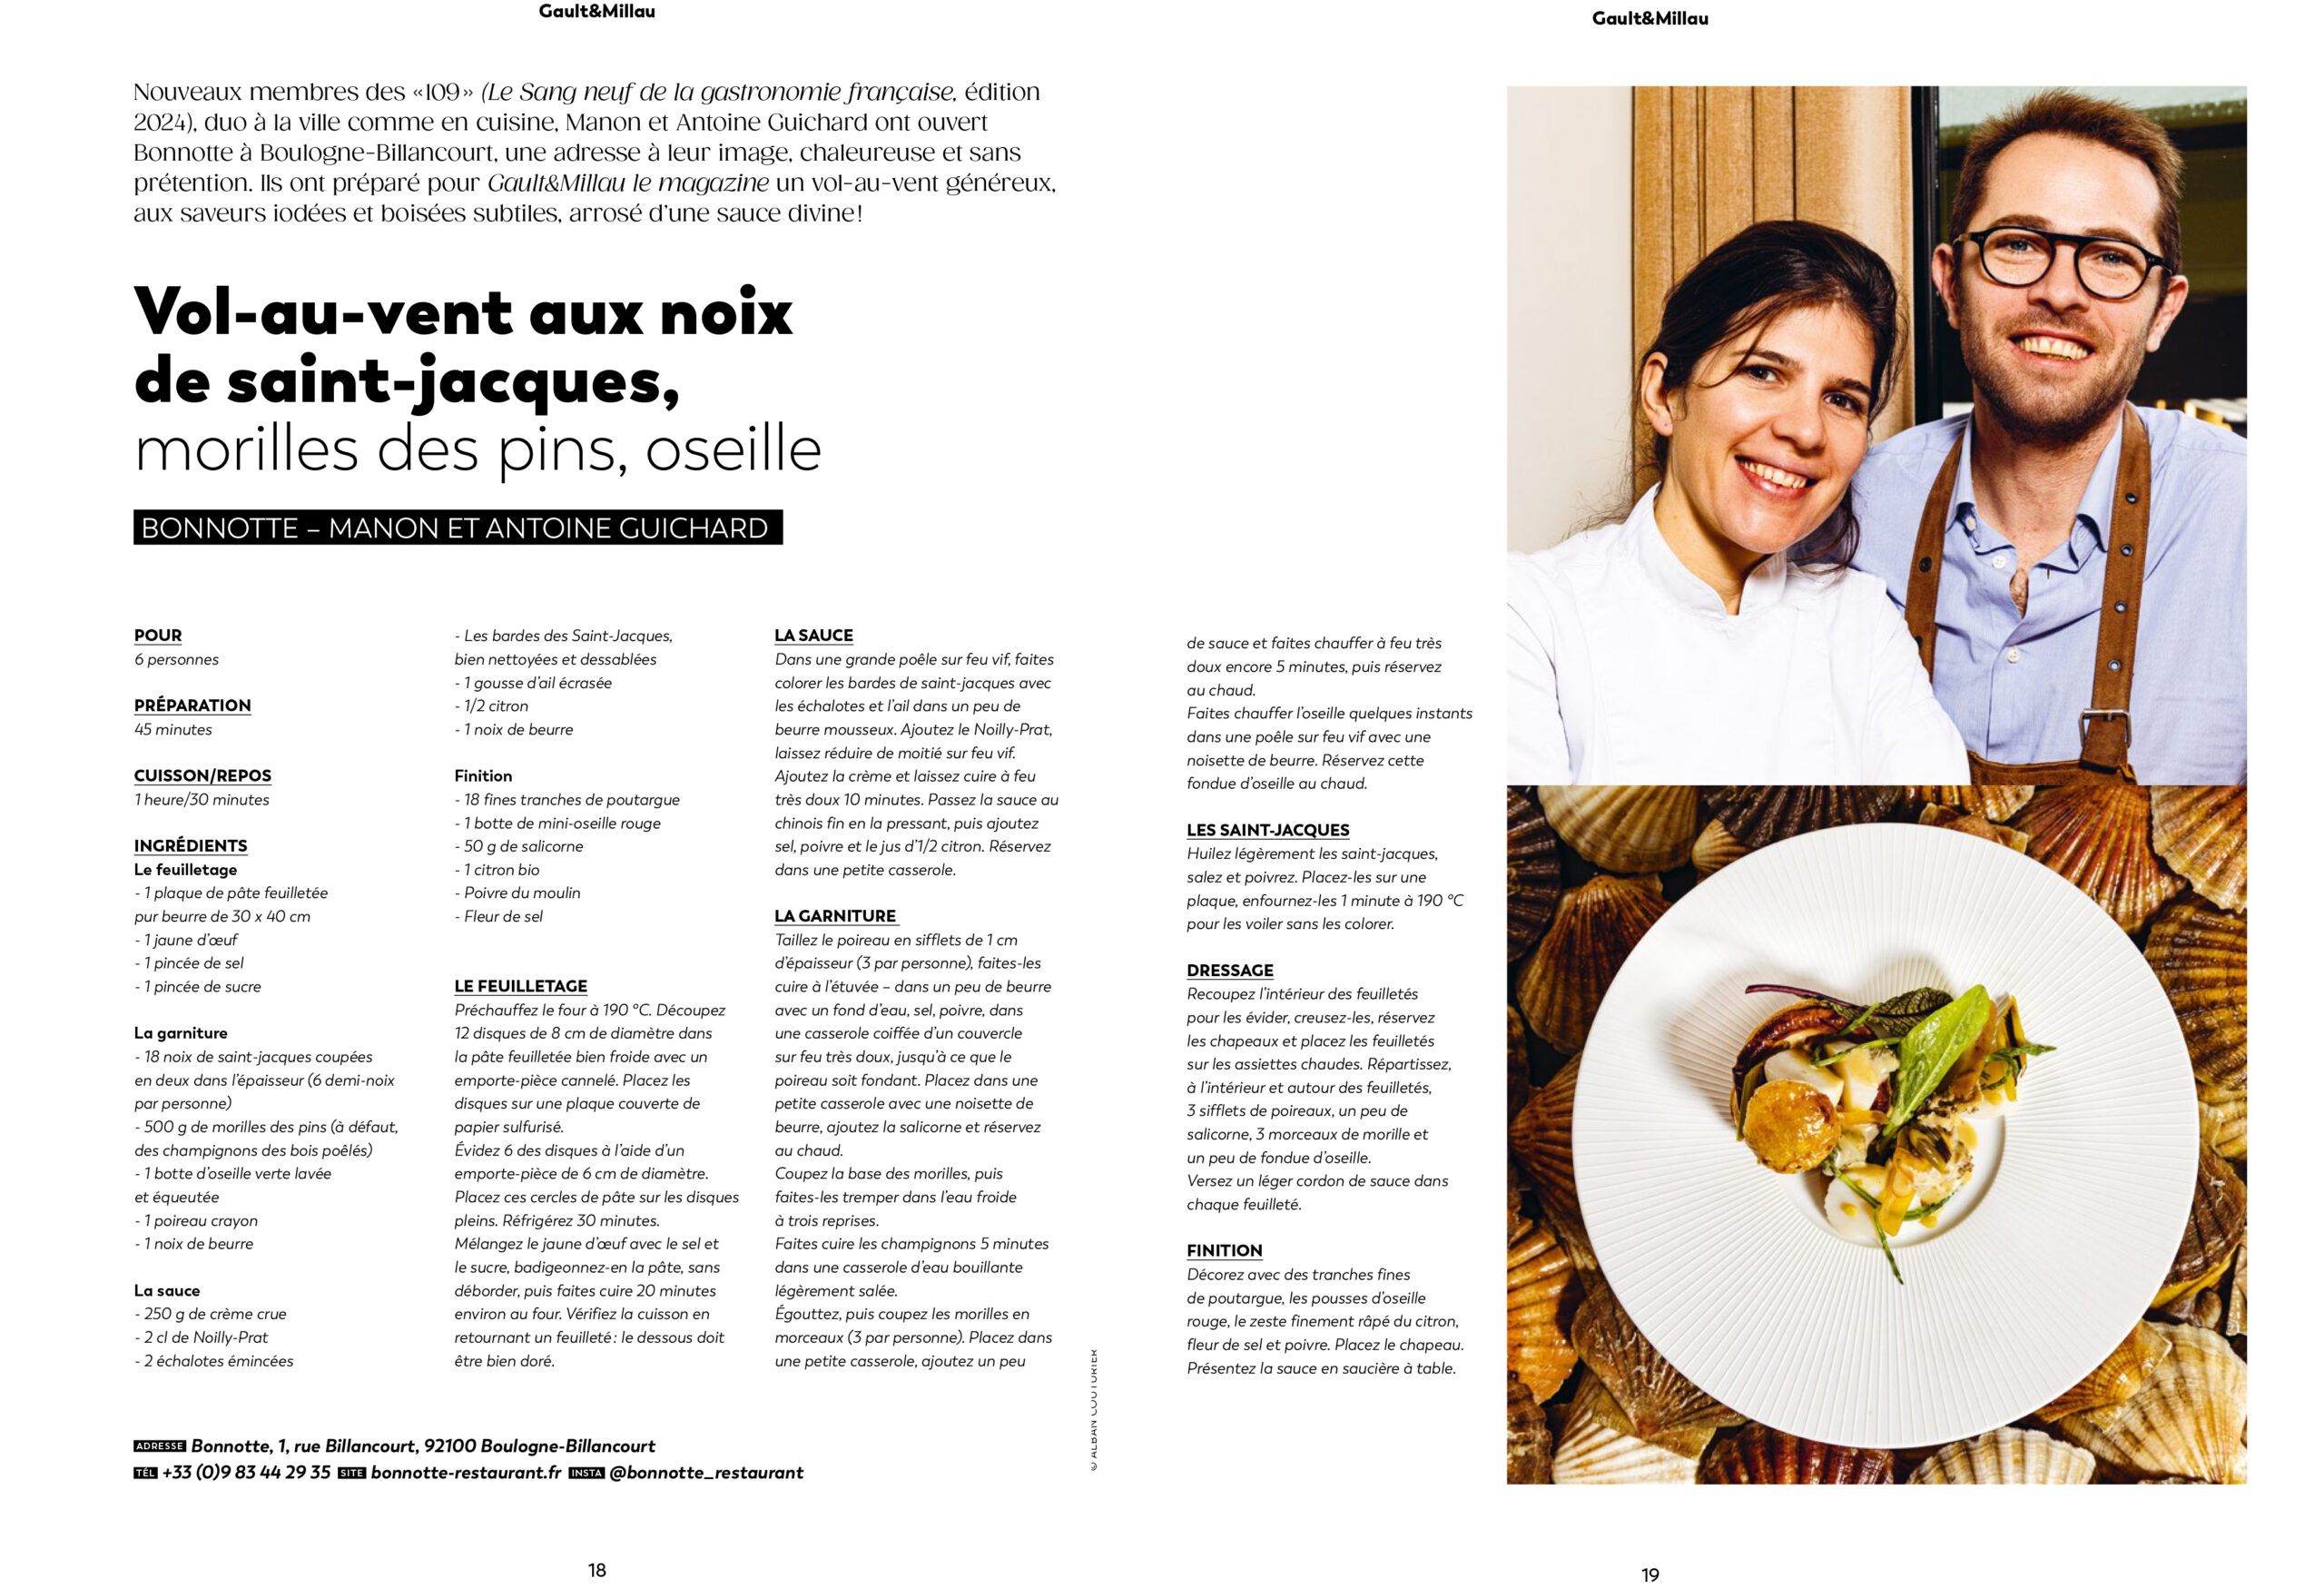 Vol au vent, restaurant Bonnotte, BoulognGault et Millau Magazine, 2024 réalisation Portrait et recette ©Alban Couturier